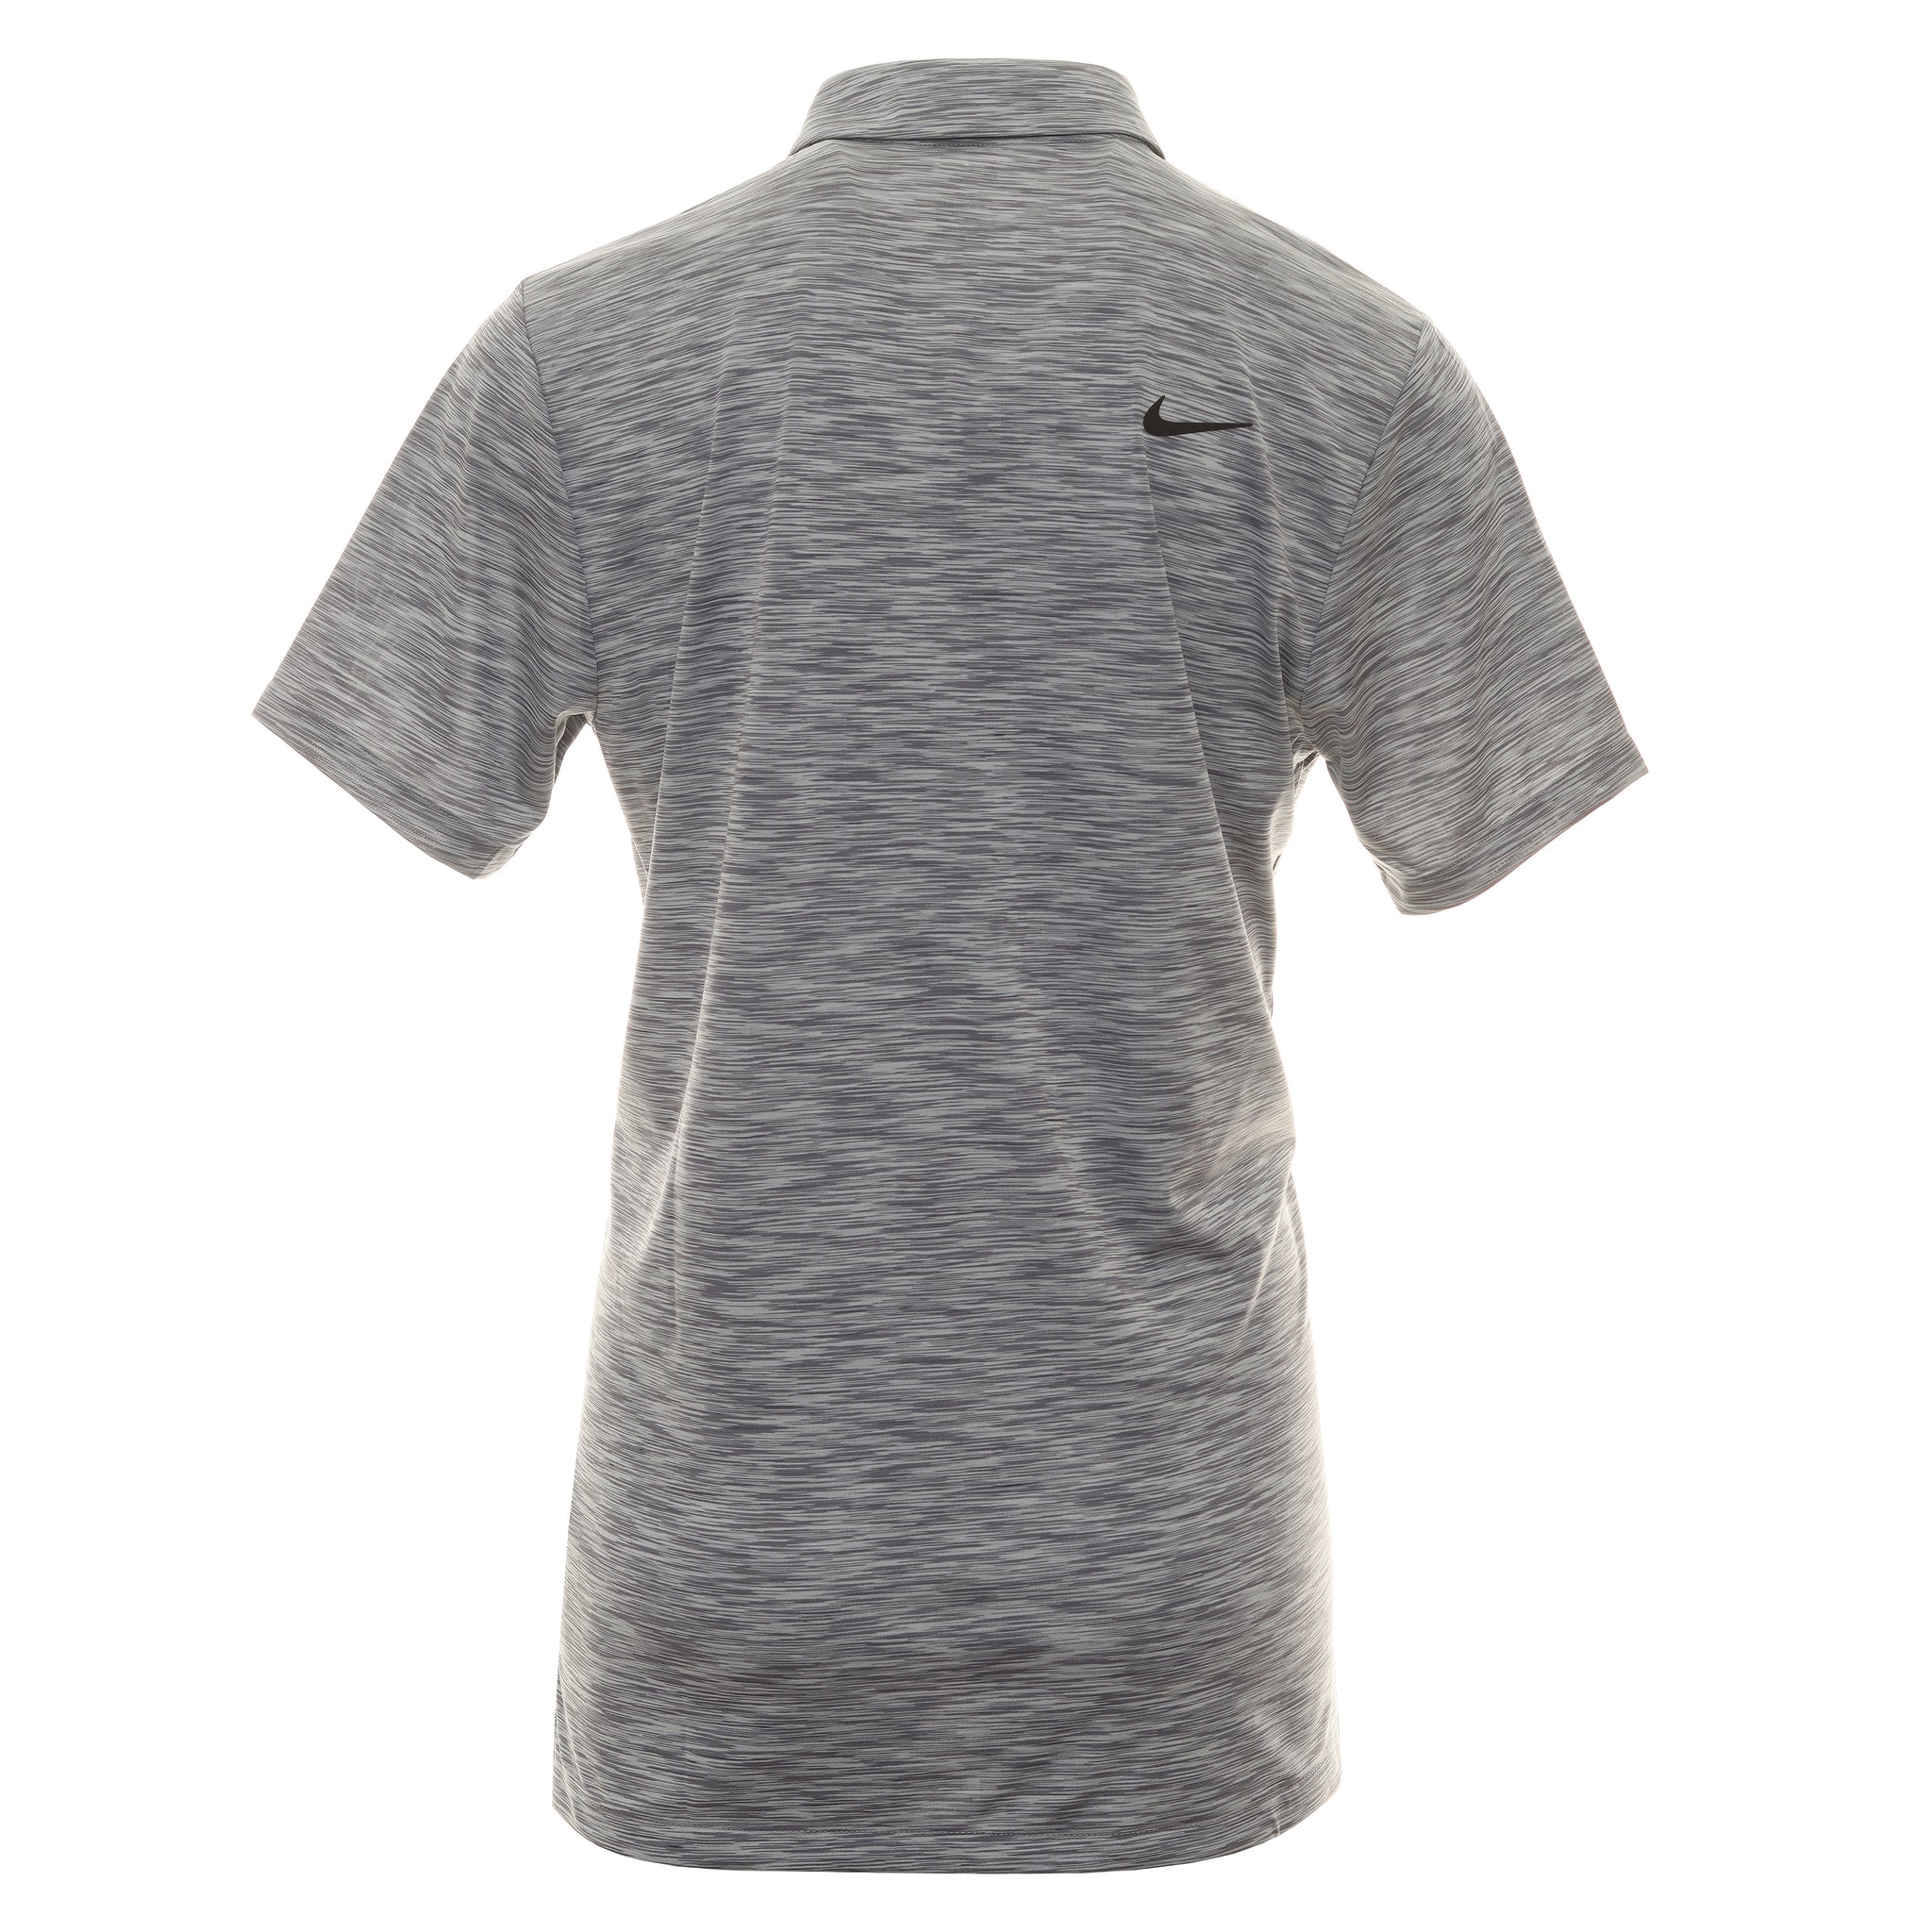 Nike Golf Dri-Fit Tour Space Dye Shirt